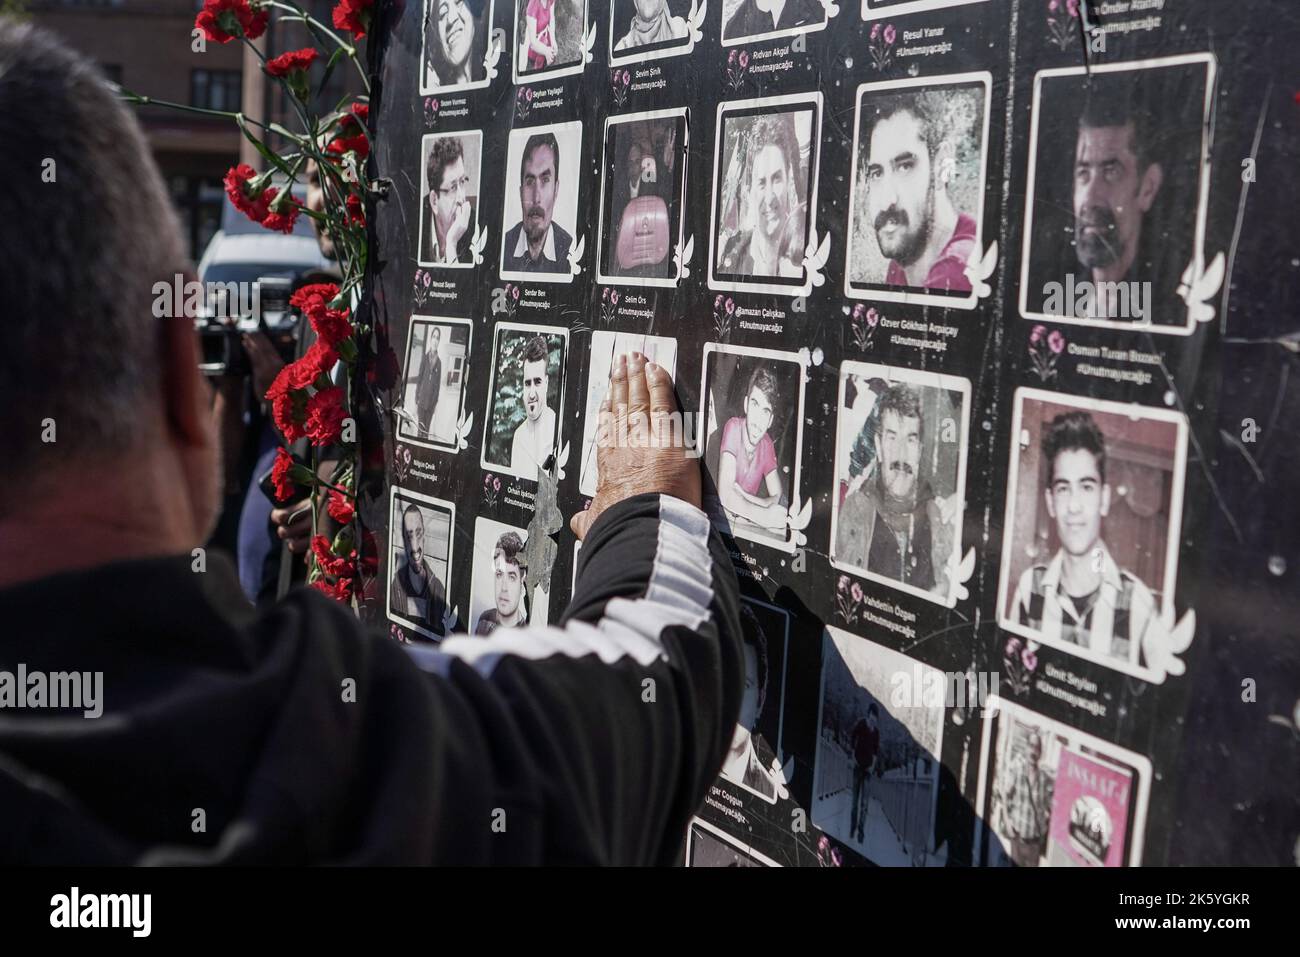 Un homme touche les photos au monument des victimes des attentats-suicides à la bombe de 2015, à Ankara. Septième anniversaire des attentats-suicides à deux lits, au cours desquels plus de 100 personnes ont été tuées (10 octobre 2015), à Ankara, sur 10 octobre 2020. Les kamikazes soupçonnés d'être liés à l'État islamique se sont fait exploser dans une foule de militants pro-kurdes pour la paix qui prévoient d'organiser un rassemblement devant la gare centrale d'Ankara, avec un nombre de morts de 103 personnes. L'attaque l'attaque terroriste la plus meurtrière de l'histoire turque. La septième année du massacre, ceux qui ont perdu leur famille et ceux qui l'étaient Banque D'Images